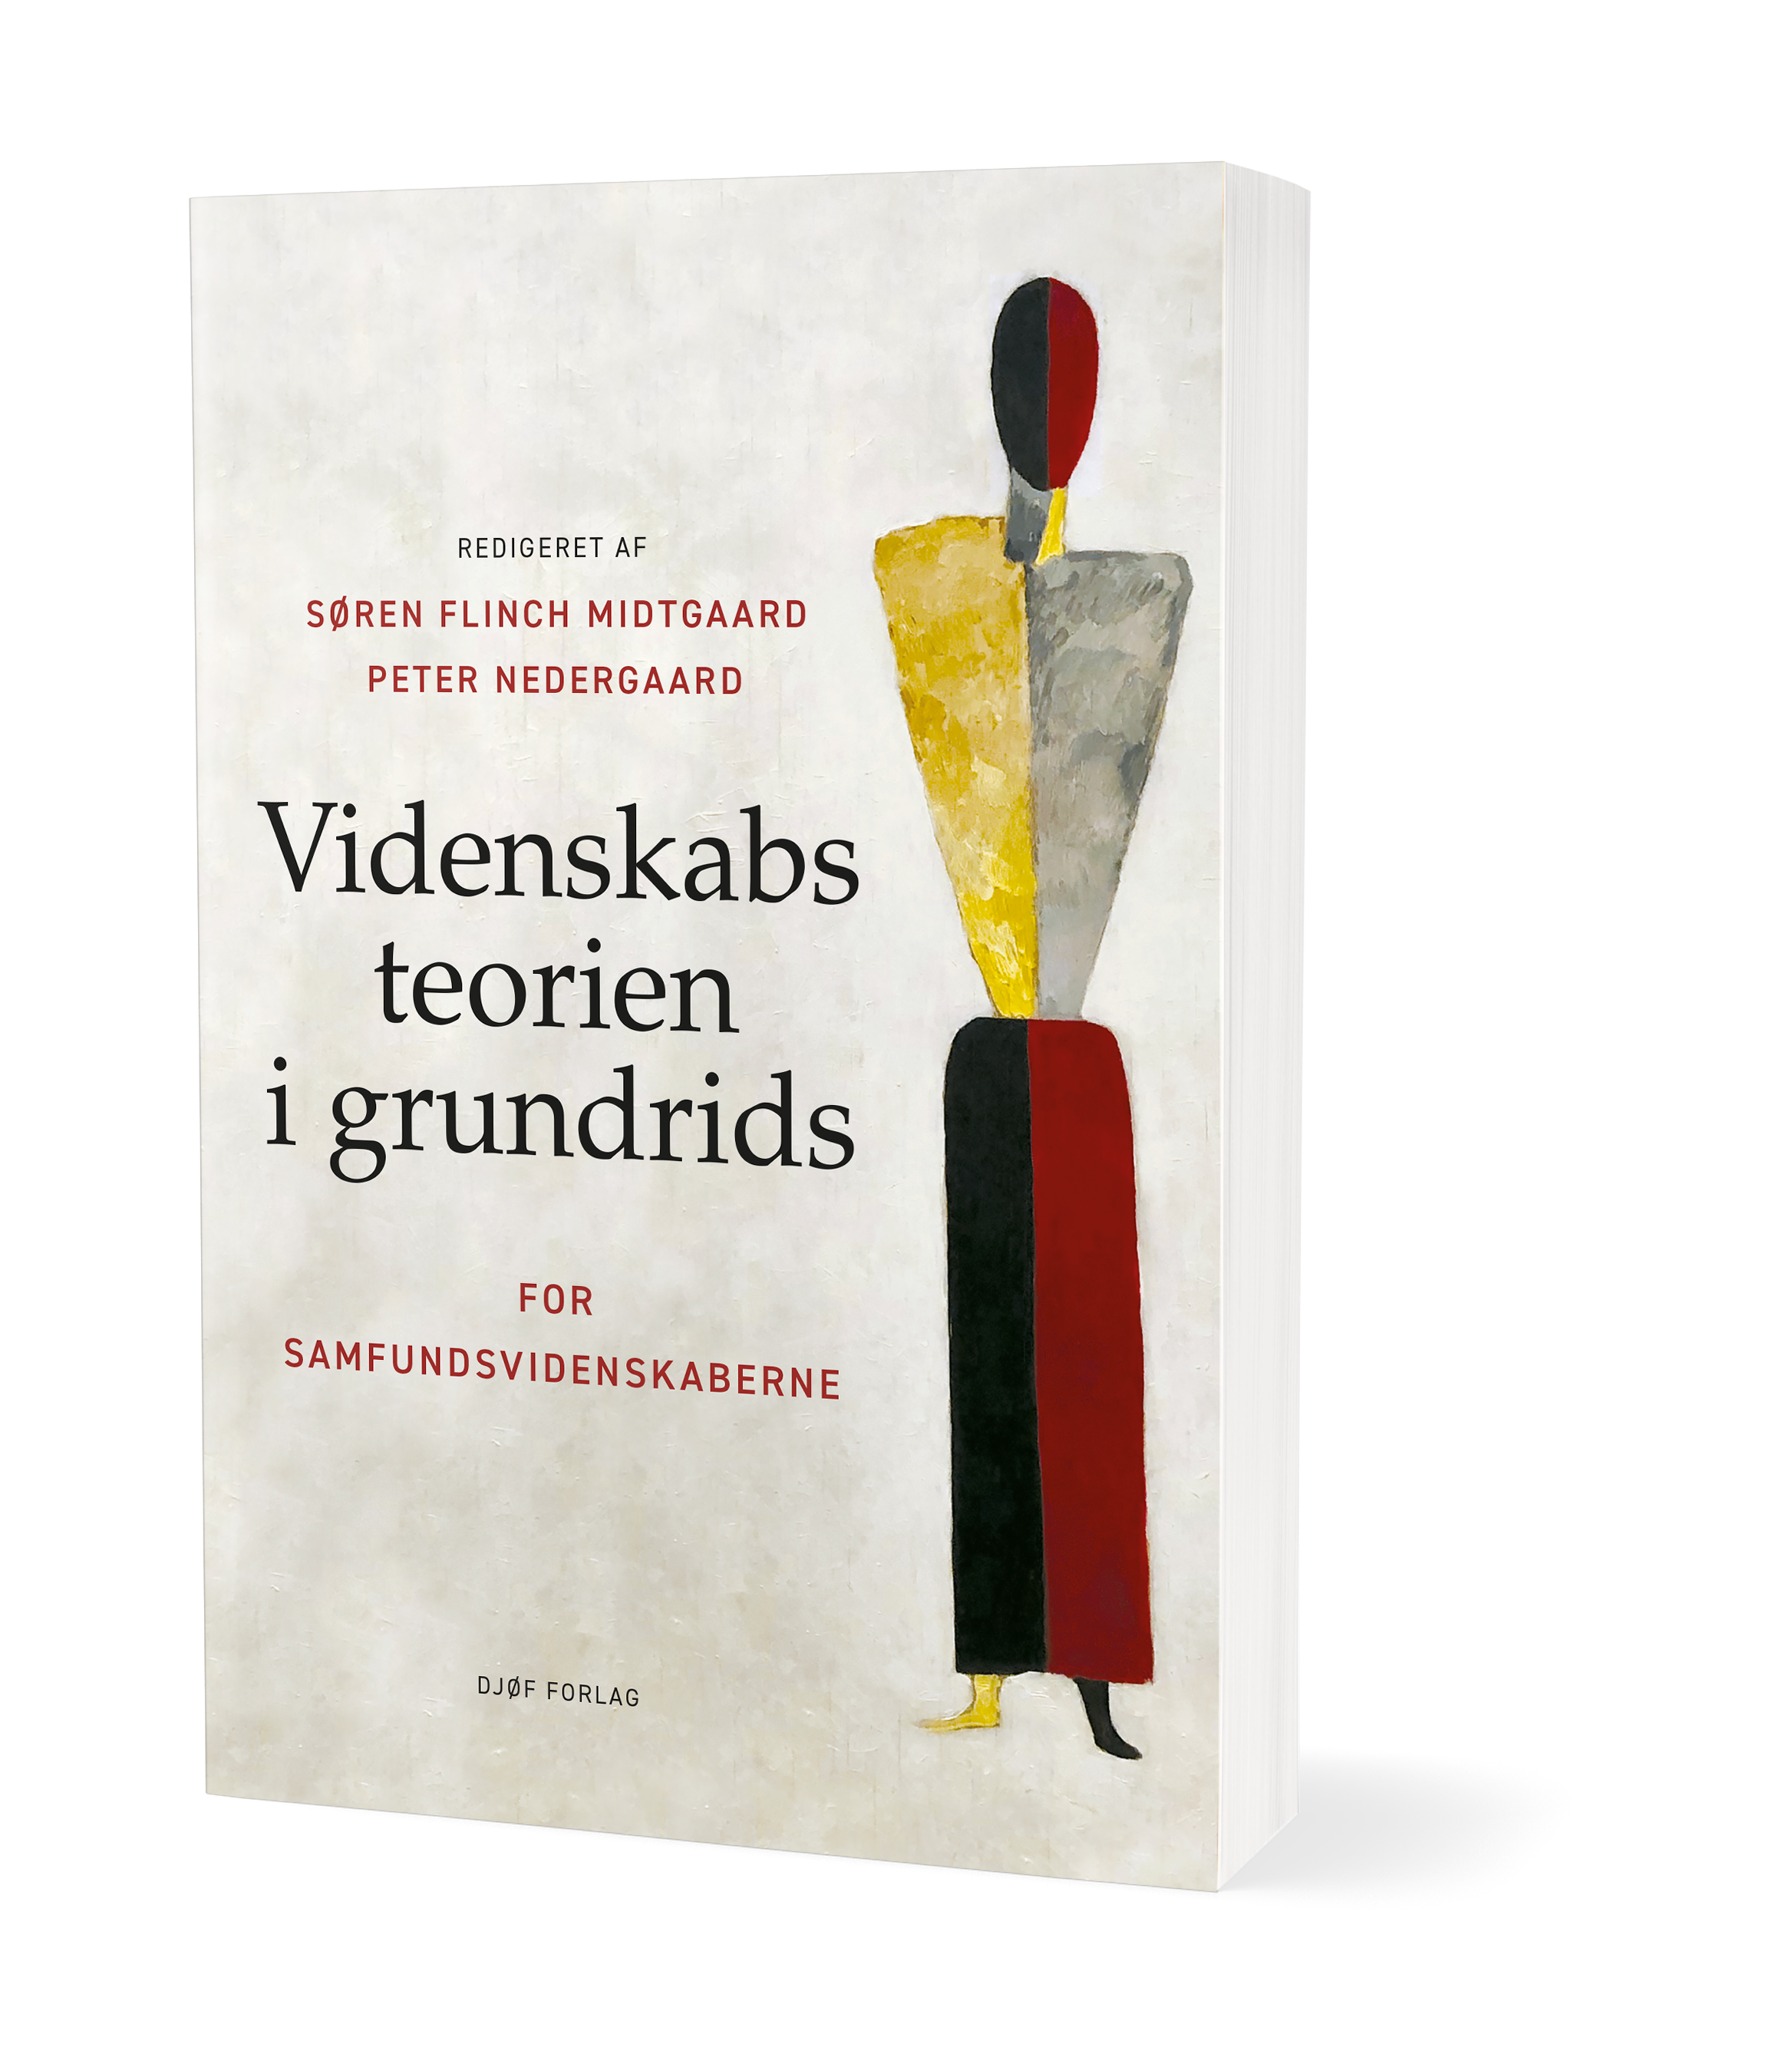 The new book "Videnskabsteorien i grundrids". Photo: Djøf Forlag.